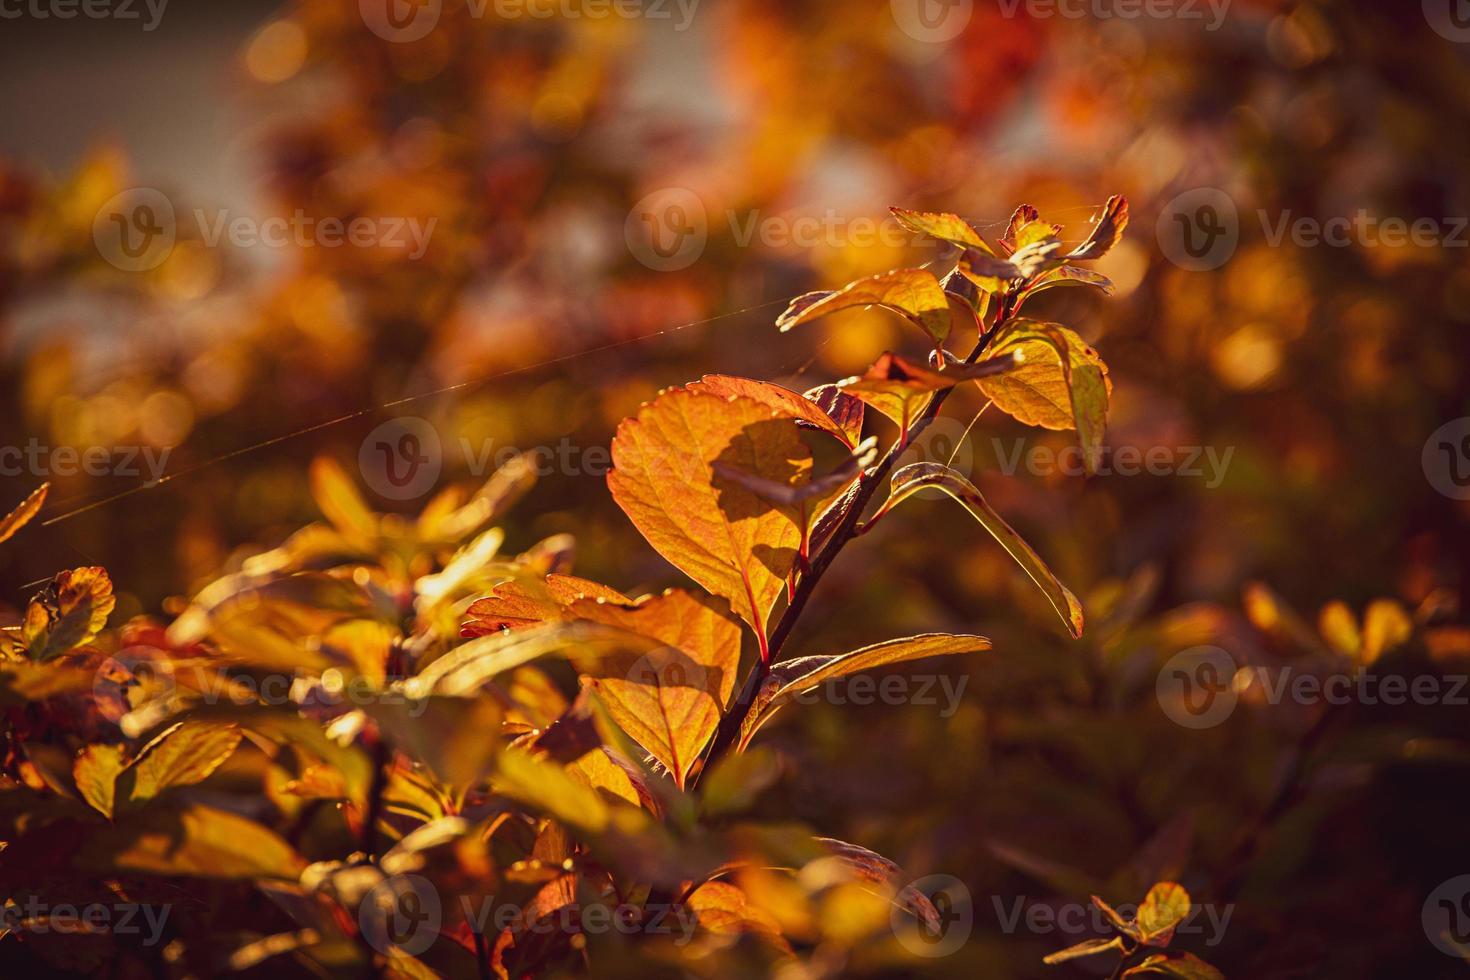 struik met geel bladeren in detailopname Aan een warm herfst dag in de tuin foto